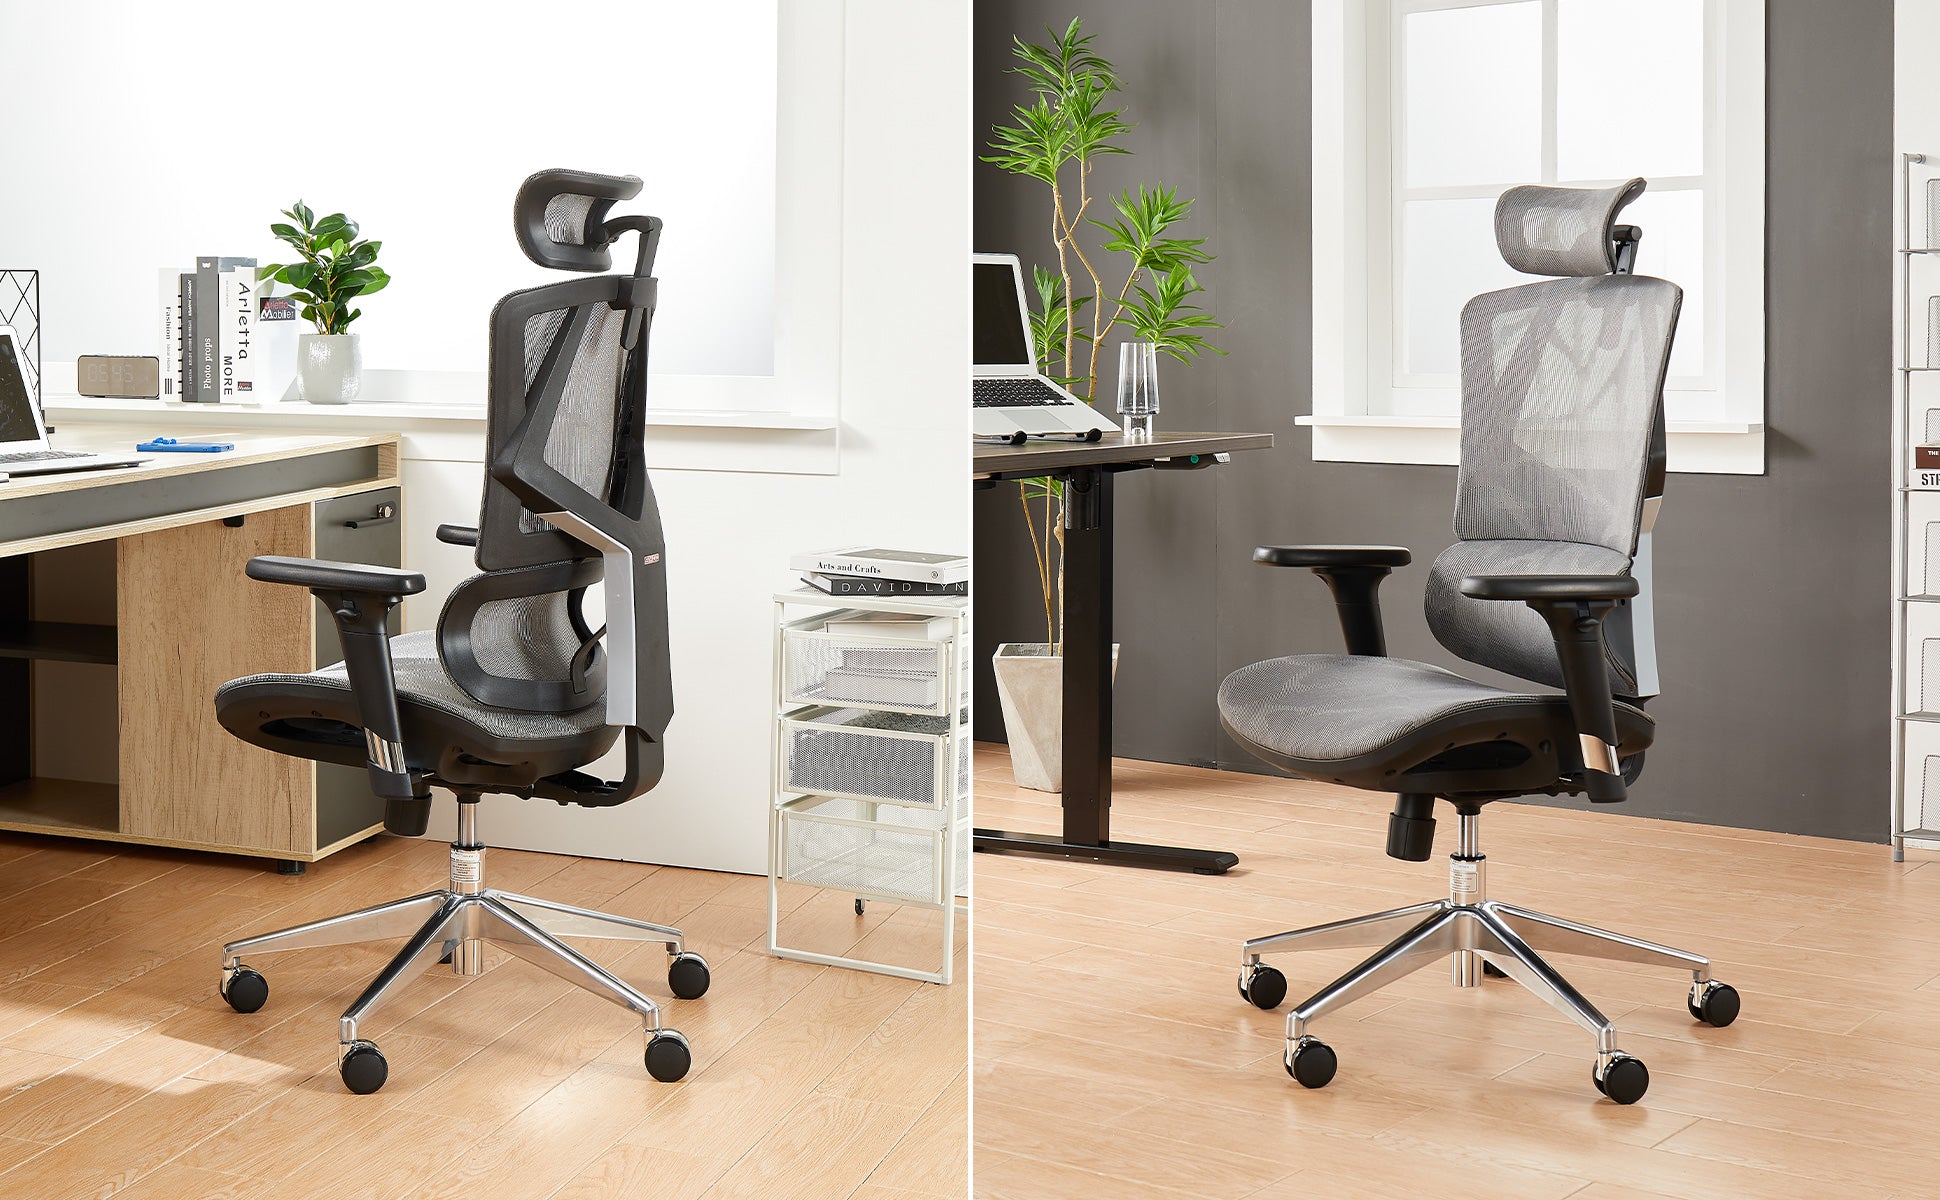 Sihoo M90C High-End Office Chair